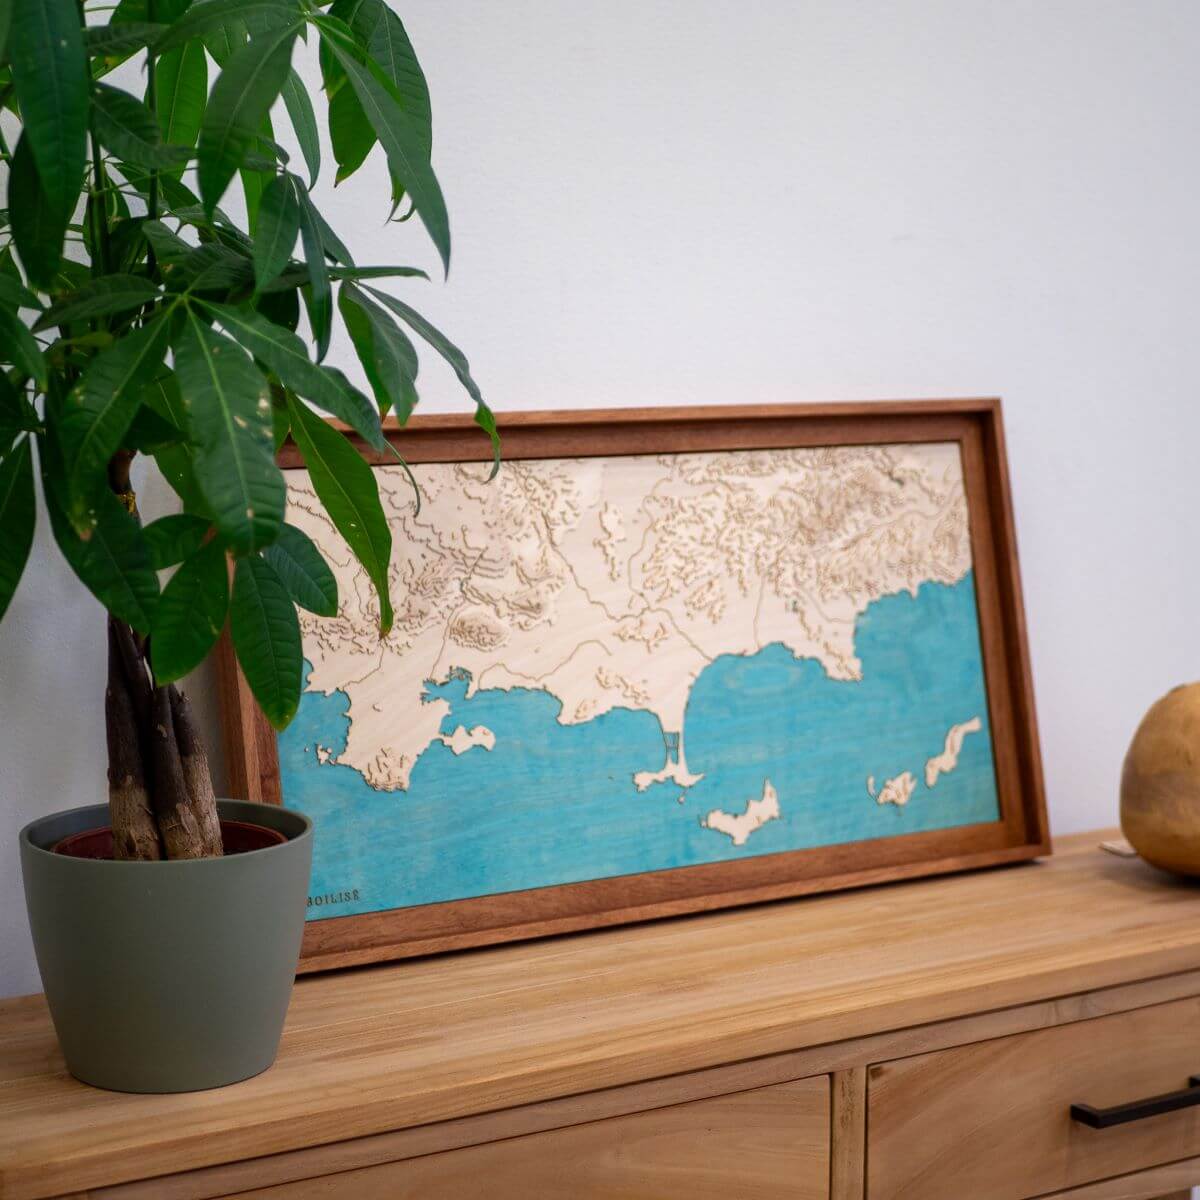 Déco naturelle avec la carte de la côte des Maures fabriquée en France de manière artisanale